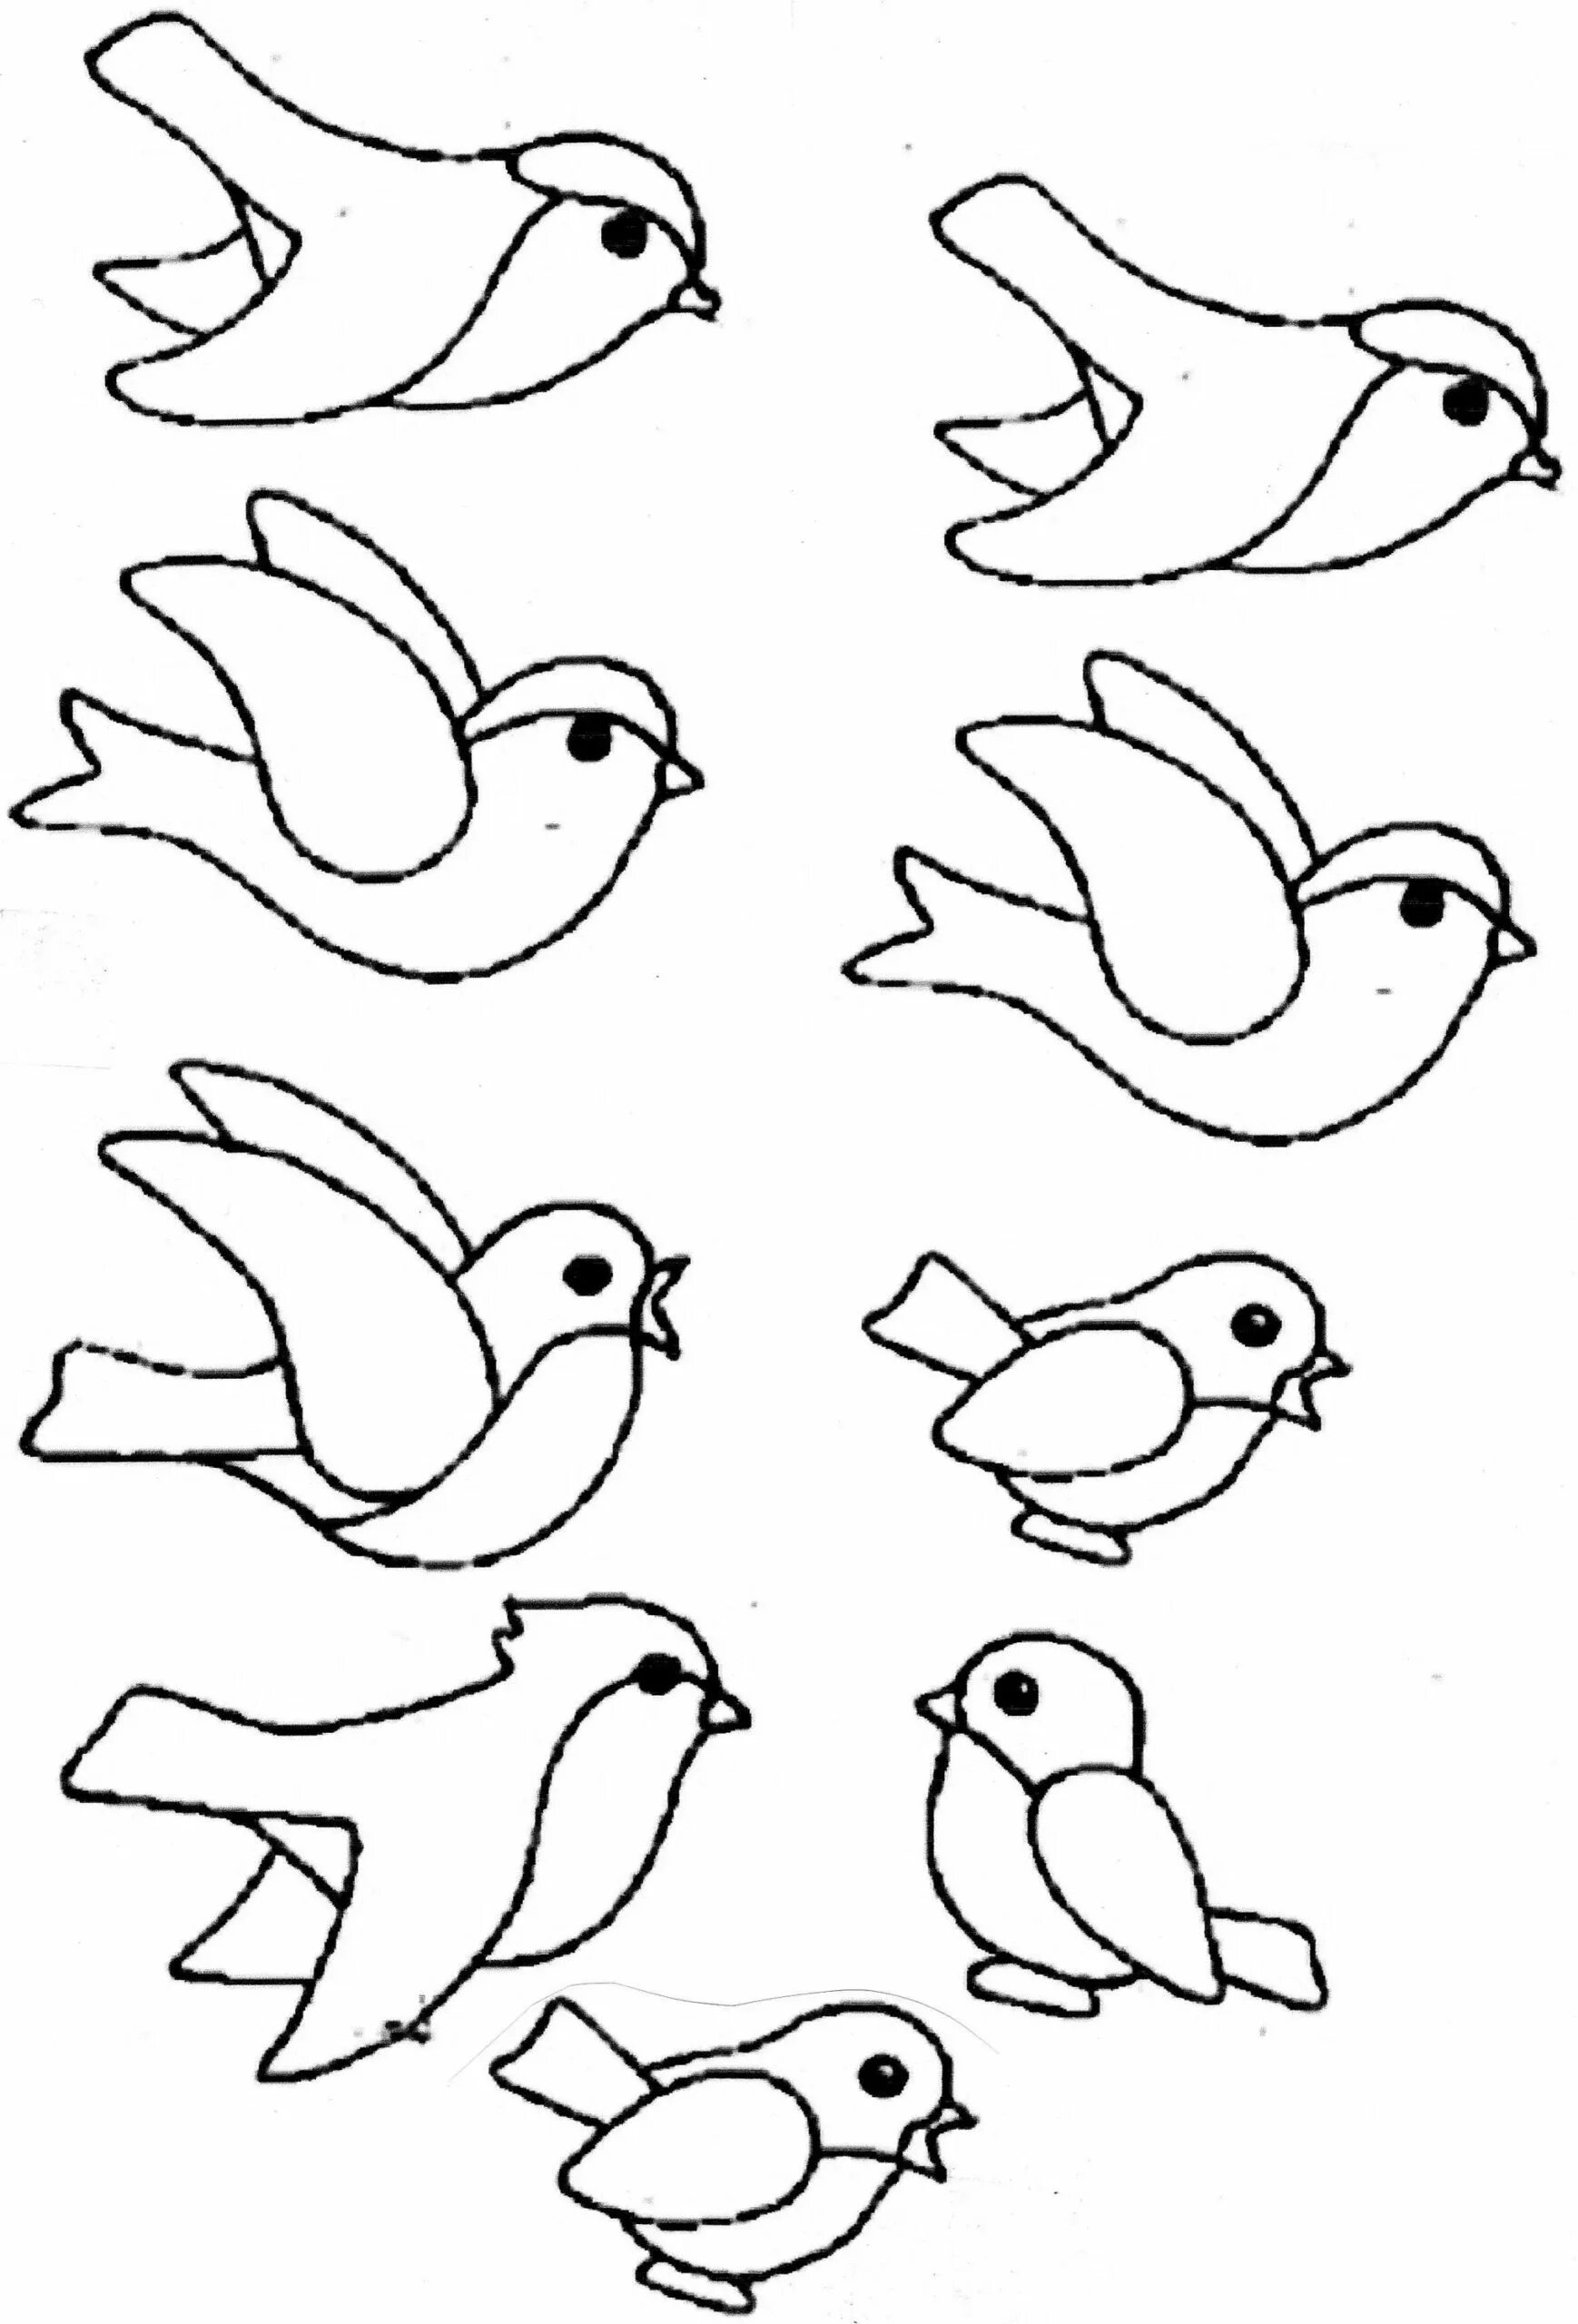 Шаблон птицы картинки. Птичка рисунок. Птичка раскраска. Шаблон птицы для рисования. Рисование птички.